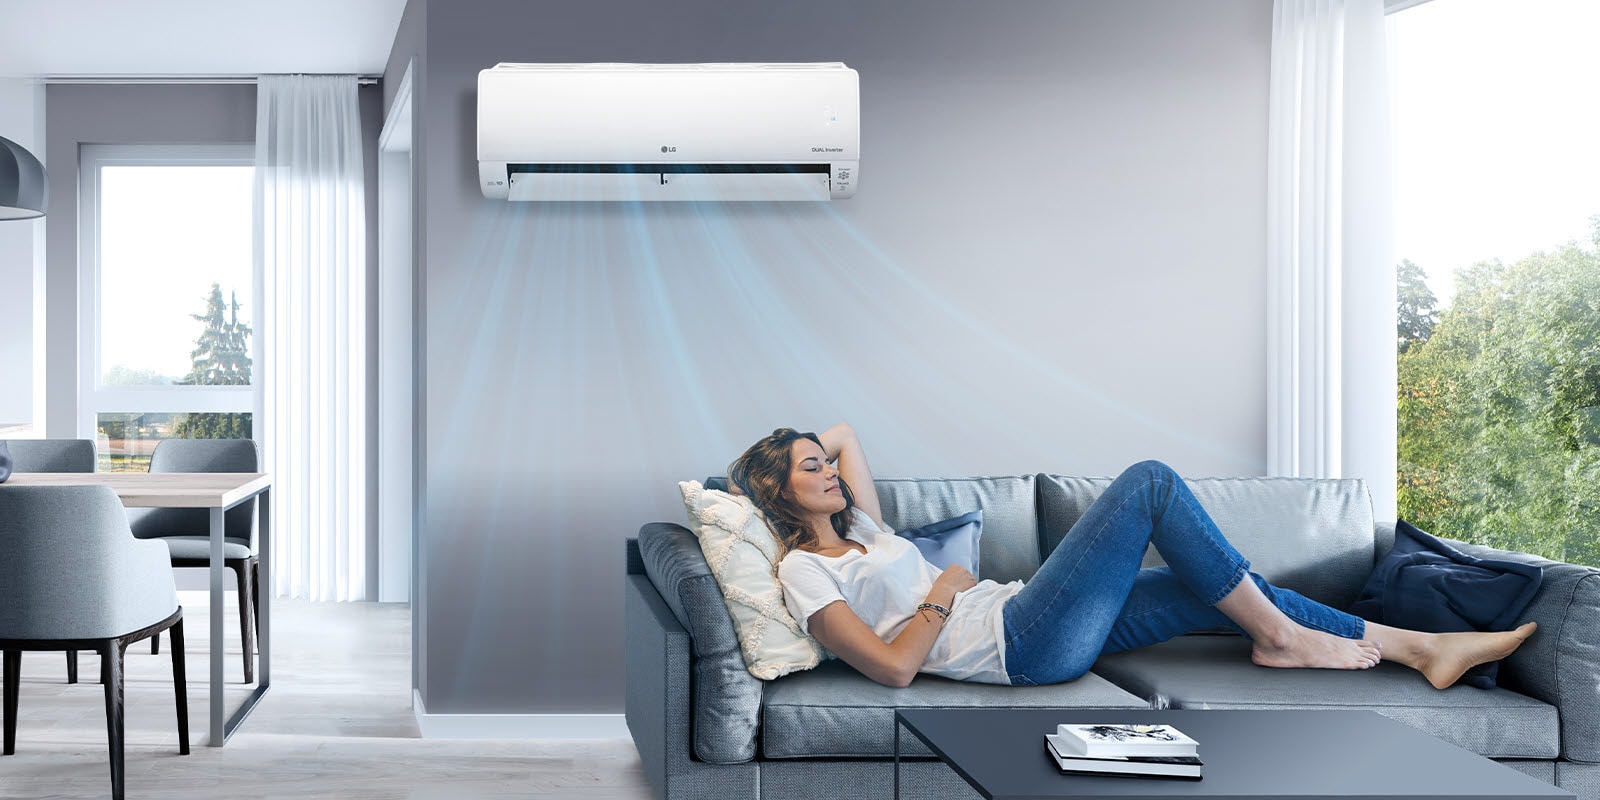 Žena se odmara na kauču u dnevnoj sobi, a LG klima-uređaj montiran je iznad nje na zidu. Na slici se vidi plavo strujanje zraka koje označava da je uređaj uključen i hladi sobu.